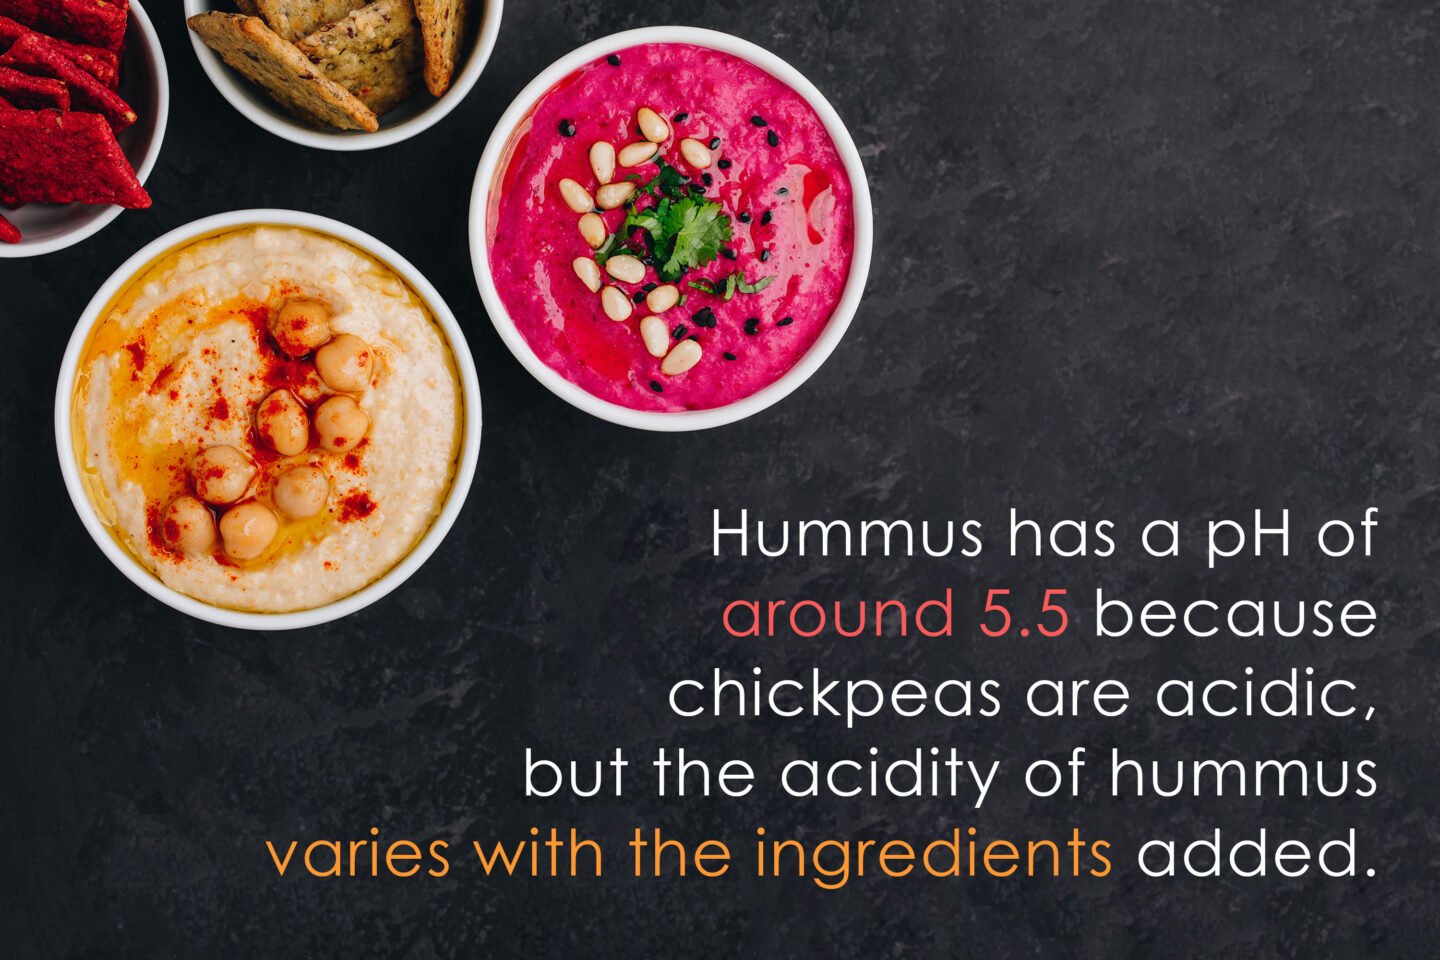 ph level of hummus varies